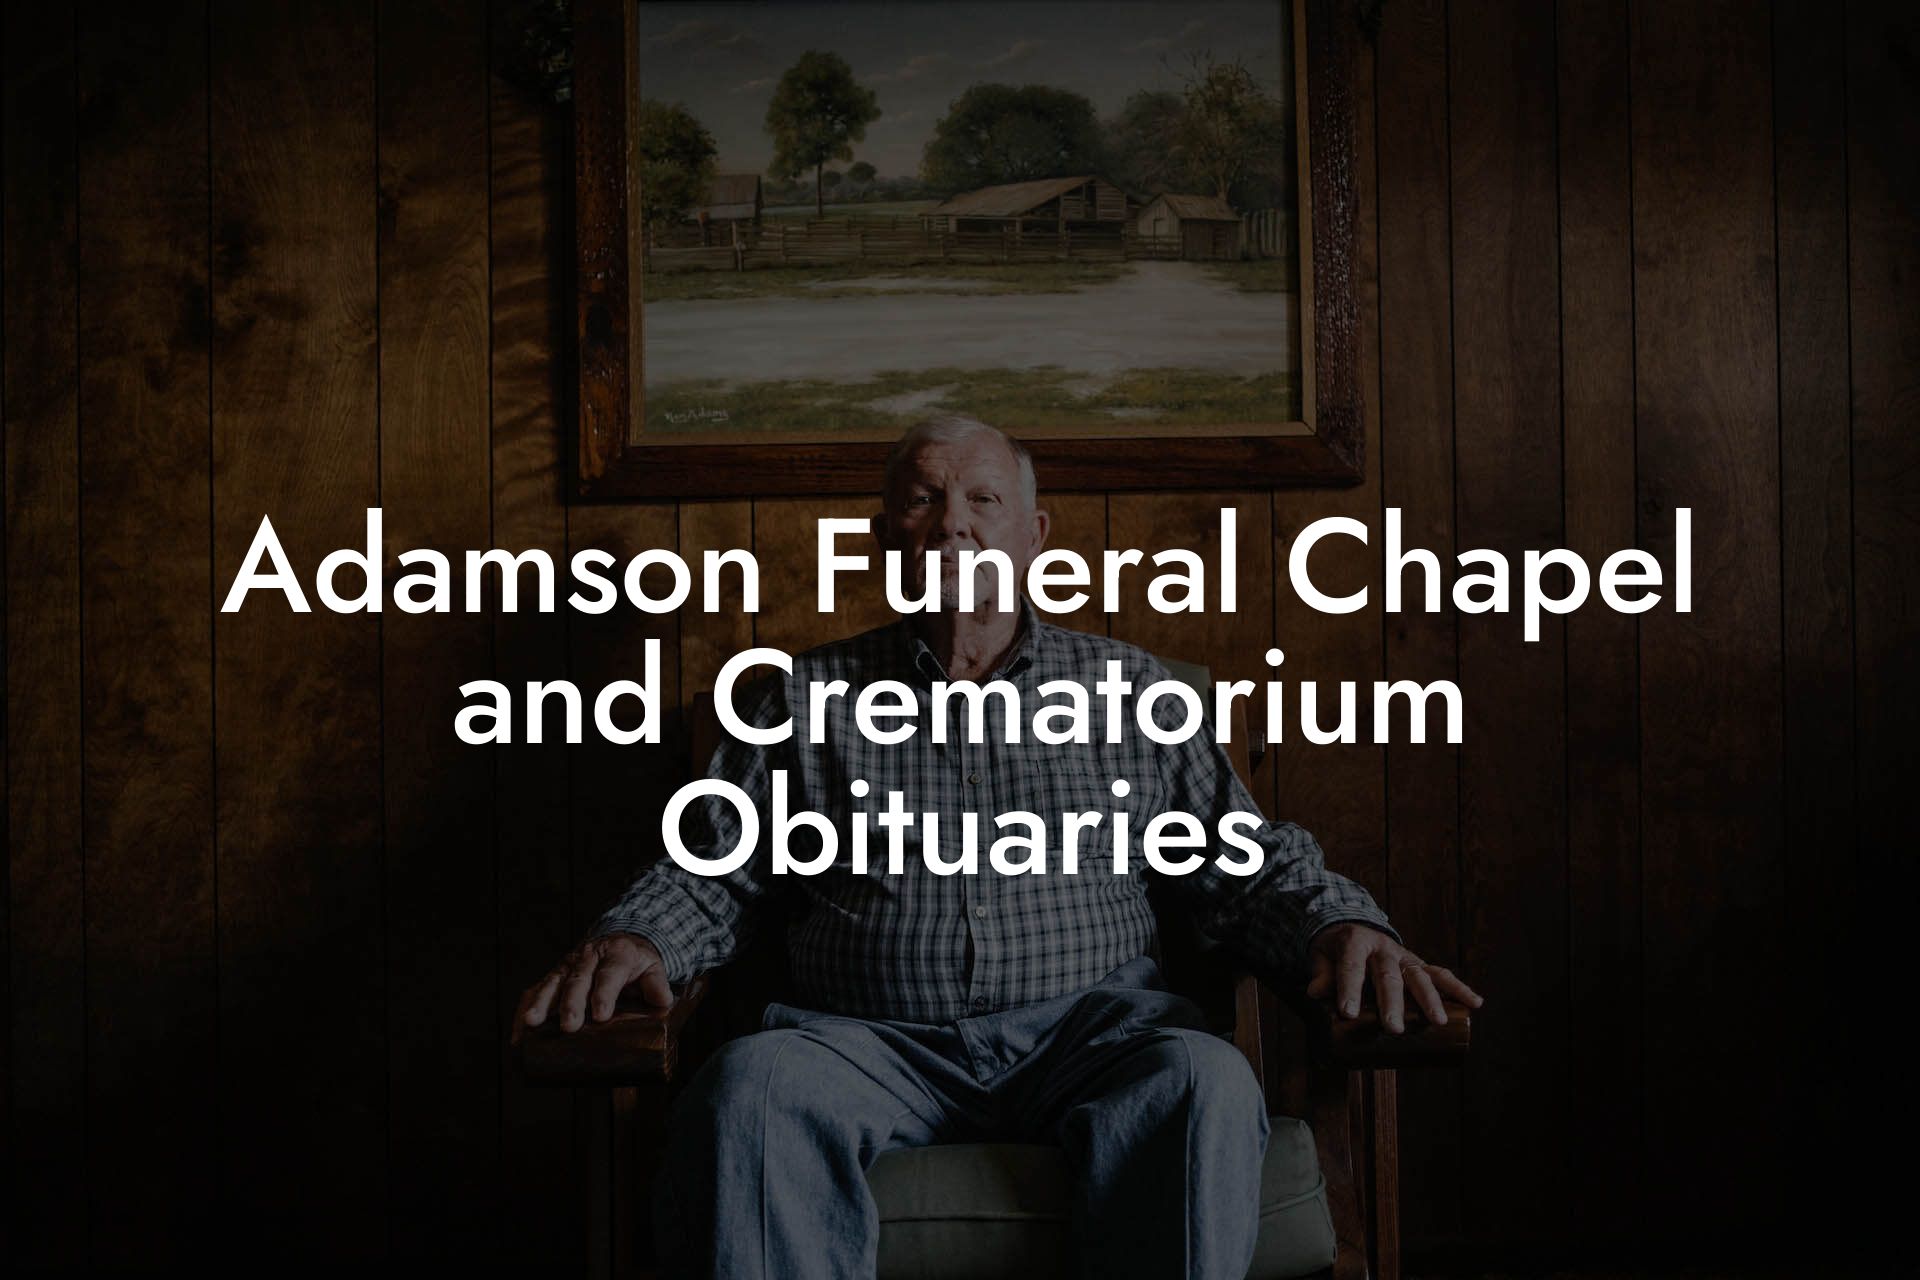 Adamson Funeral Chapel and Crematorium Obituaries